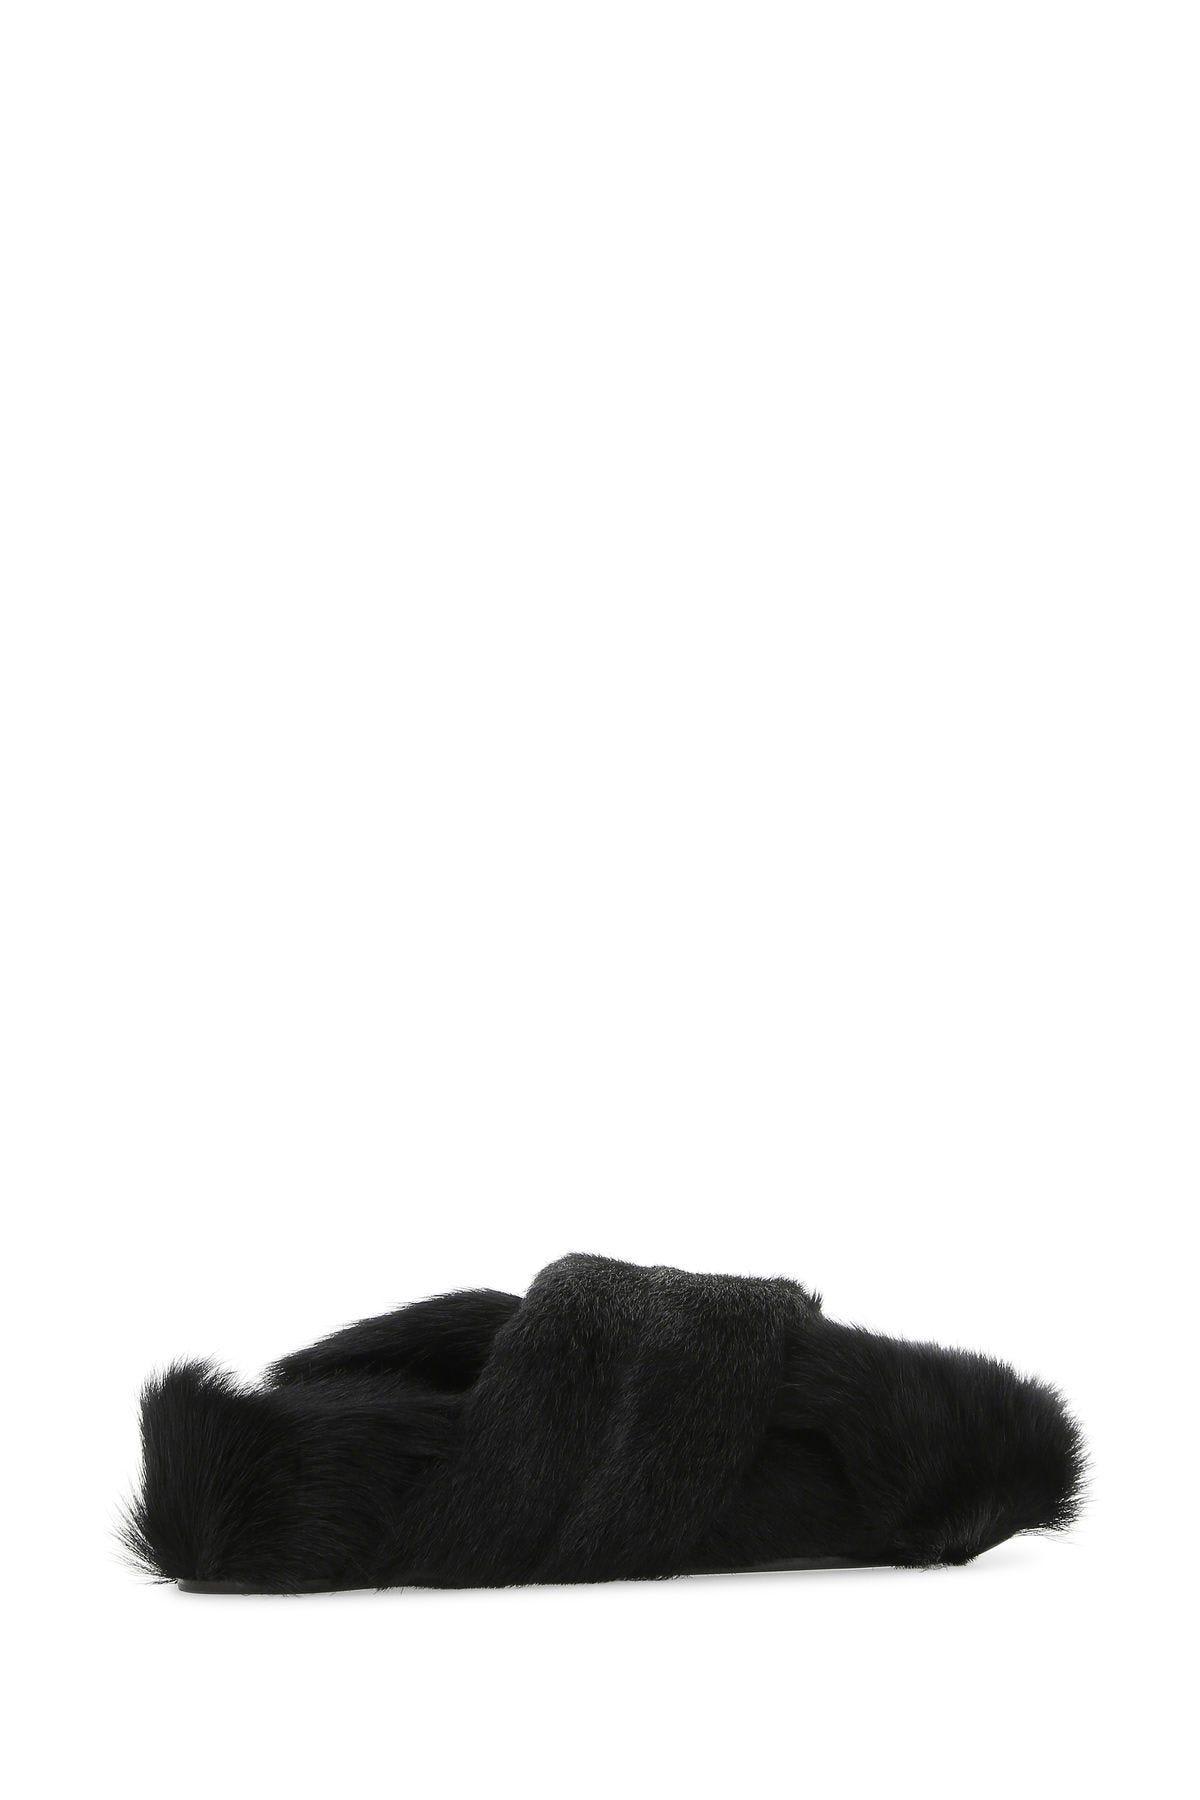 Shop Jil Sander Black Fur Slippers